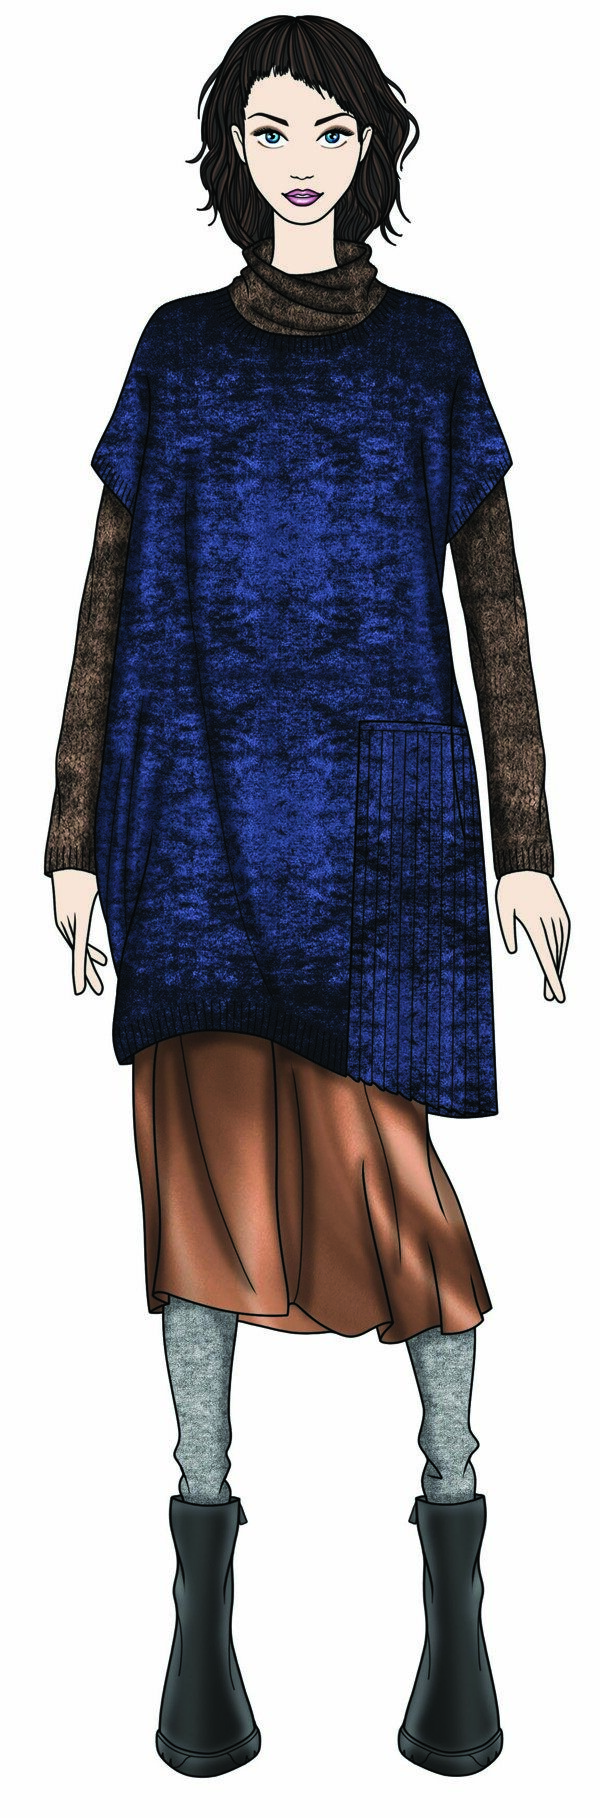 知性深蓝色连衣裙女装服装效果图